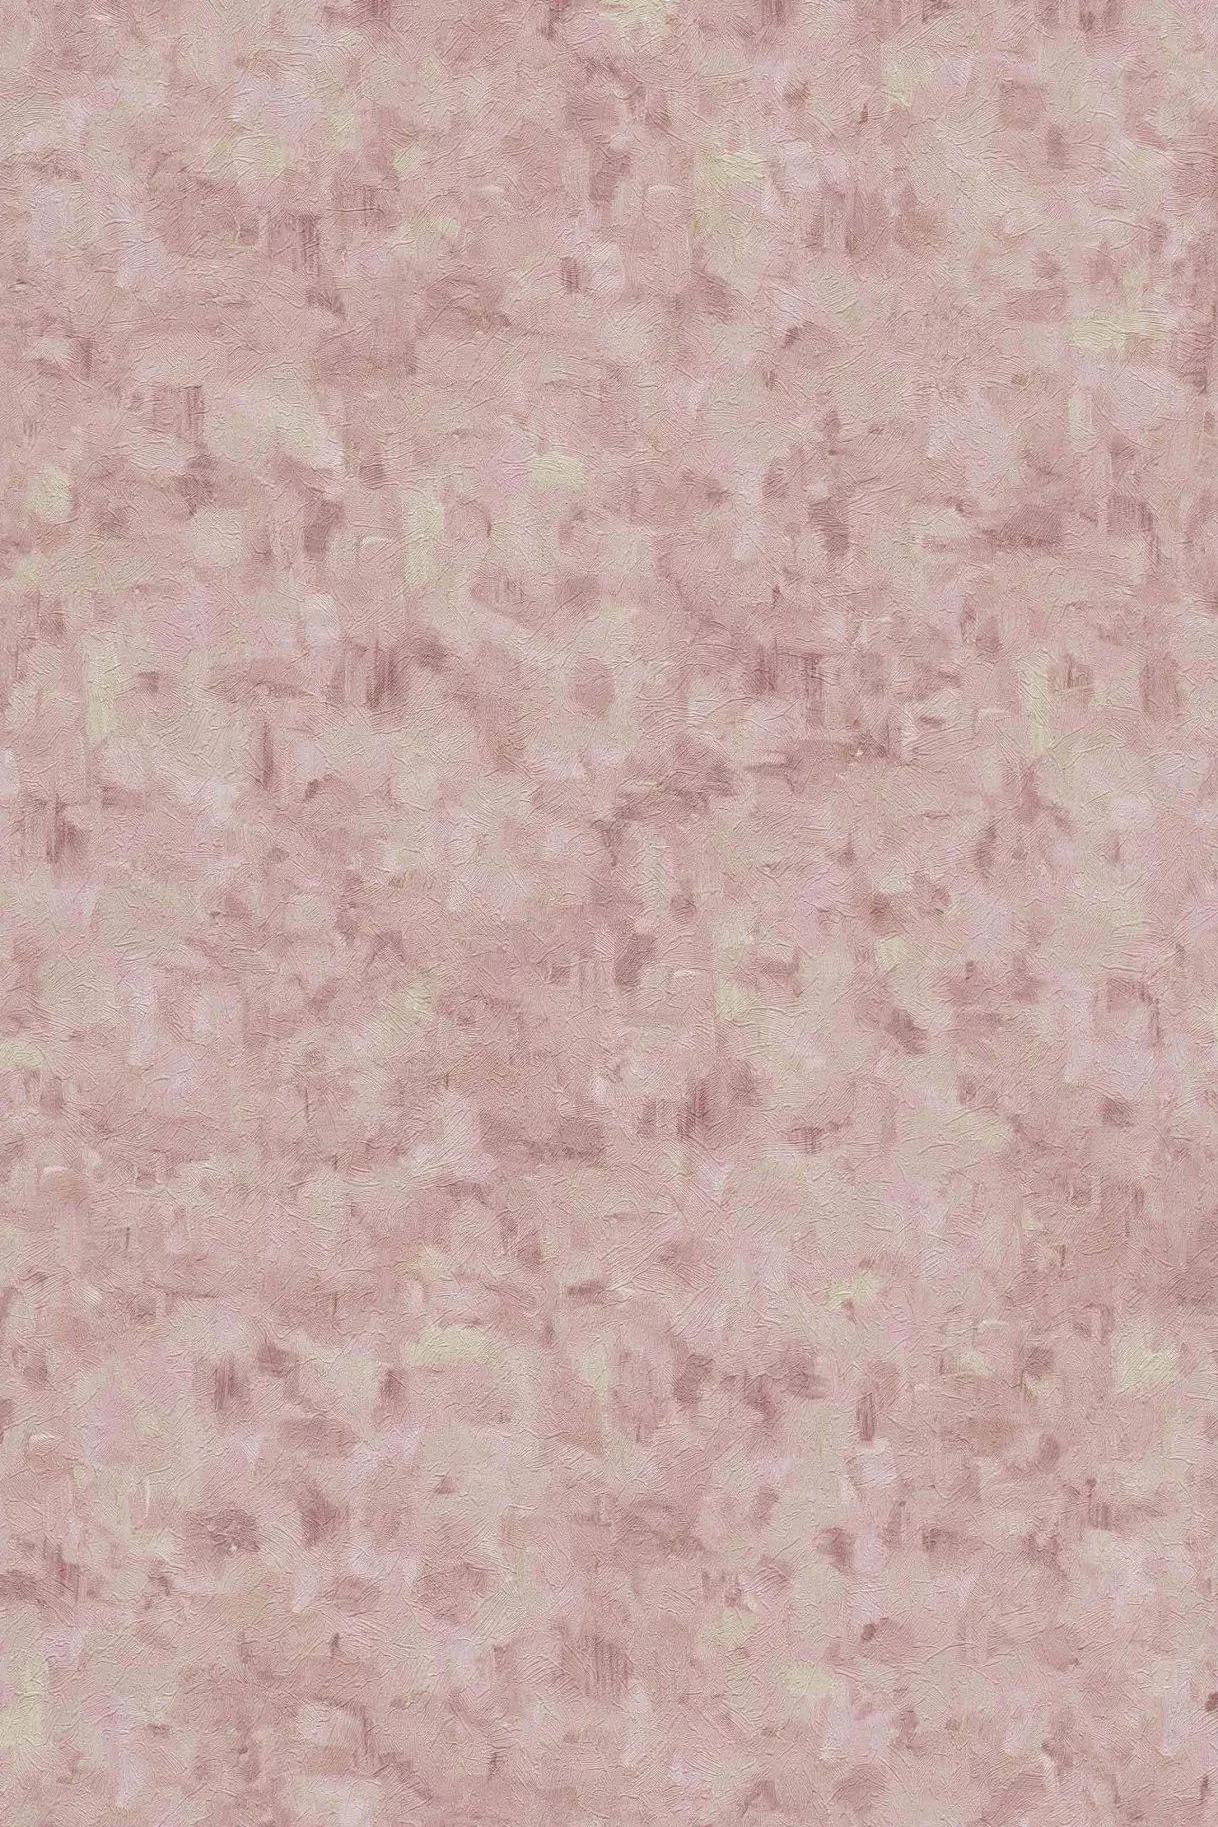 Van Gogh ecsetvonásai rózsaszín színű tapétán